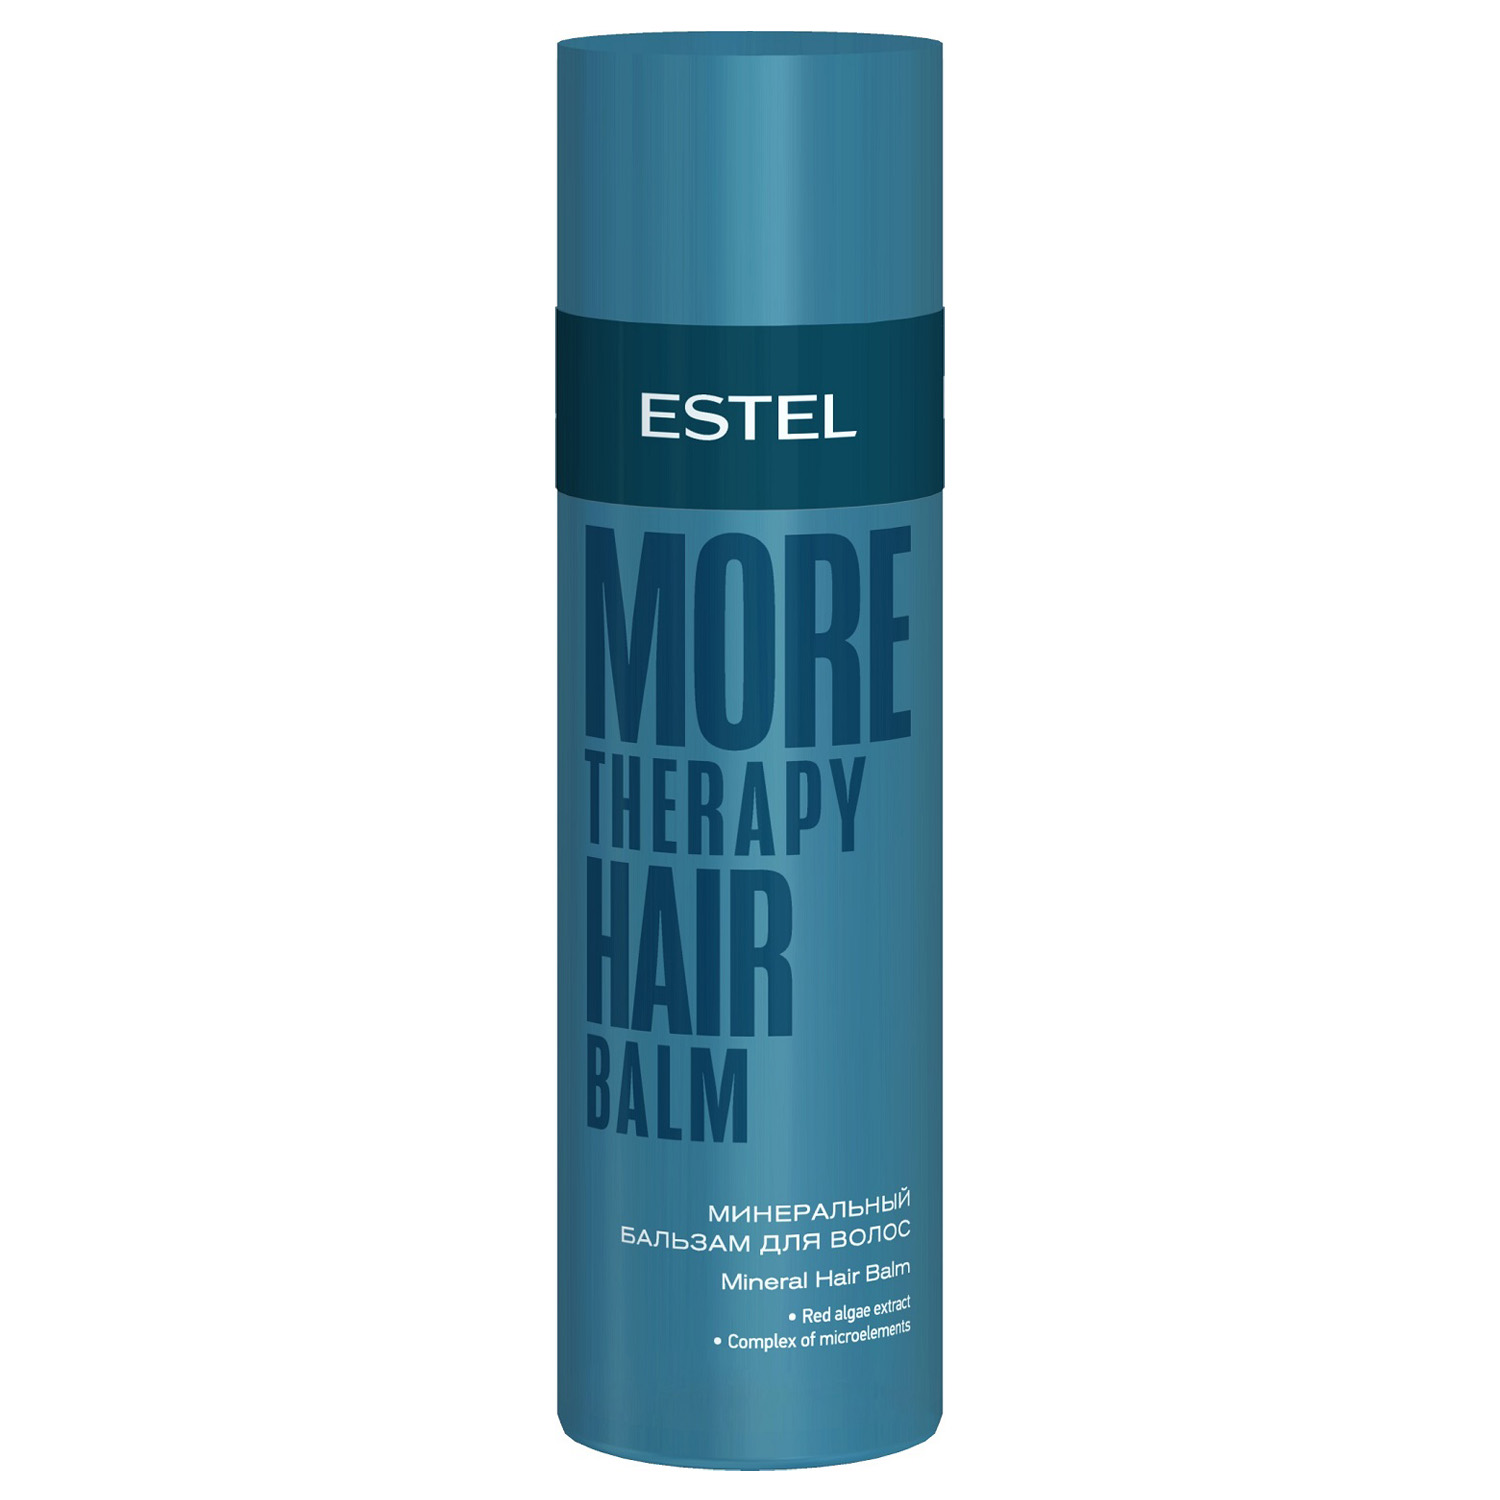 Estel Минеральный бальзам для волос, 200 мл (Estel, More Therapy) цена и фото